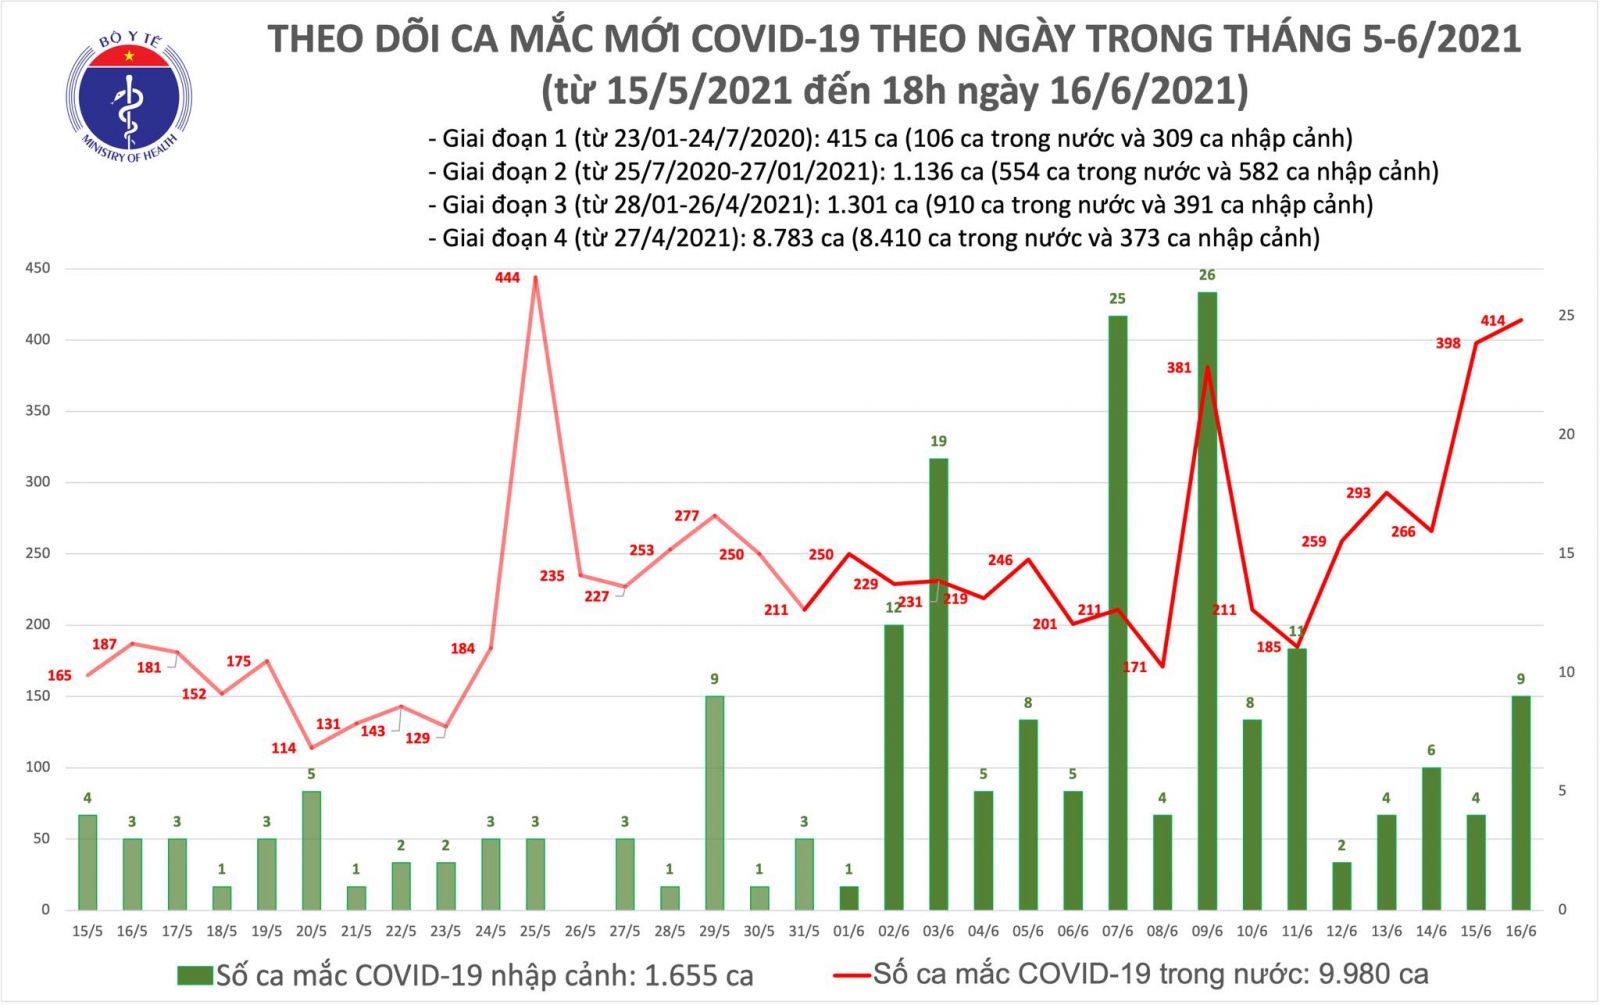 Tối 16/6: Thêm 155 ca mắc COVID-19, tổng trong ngày Việt Nam ghi nhận 423 trường hợp